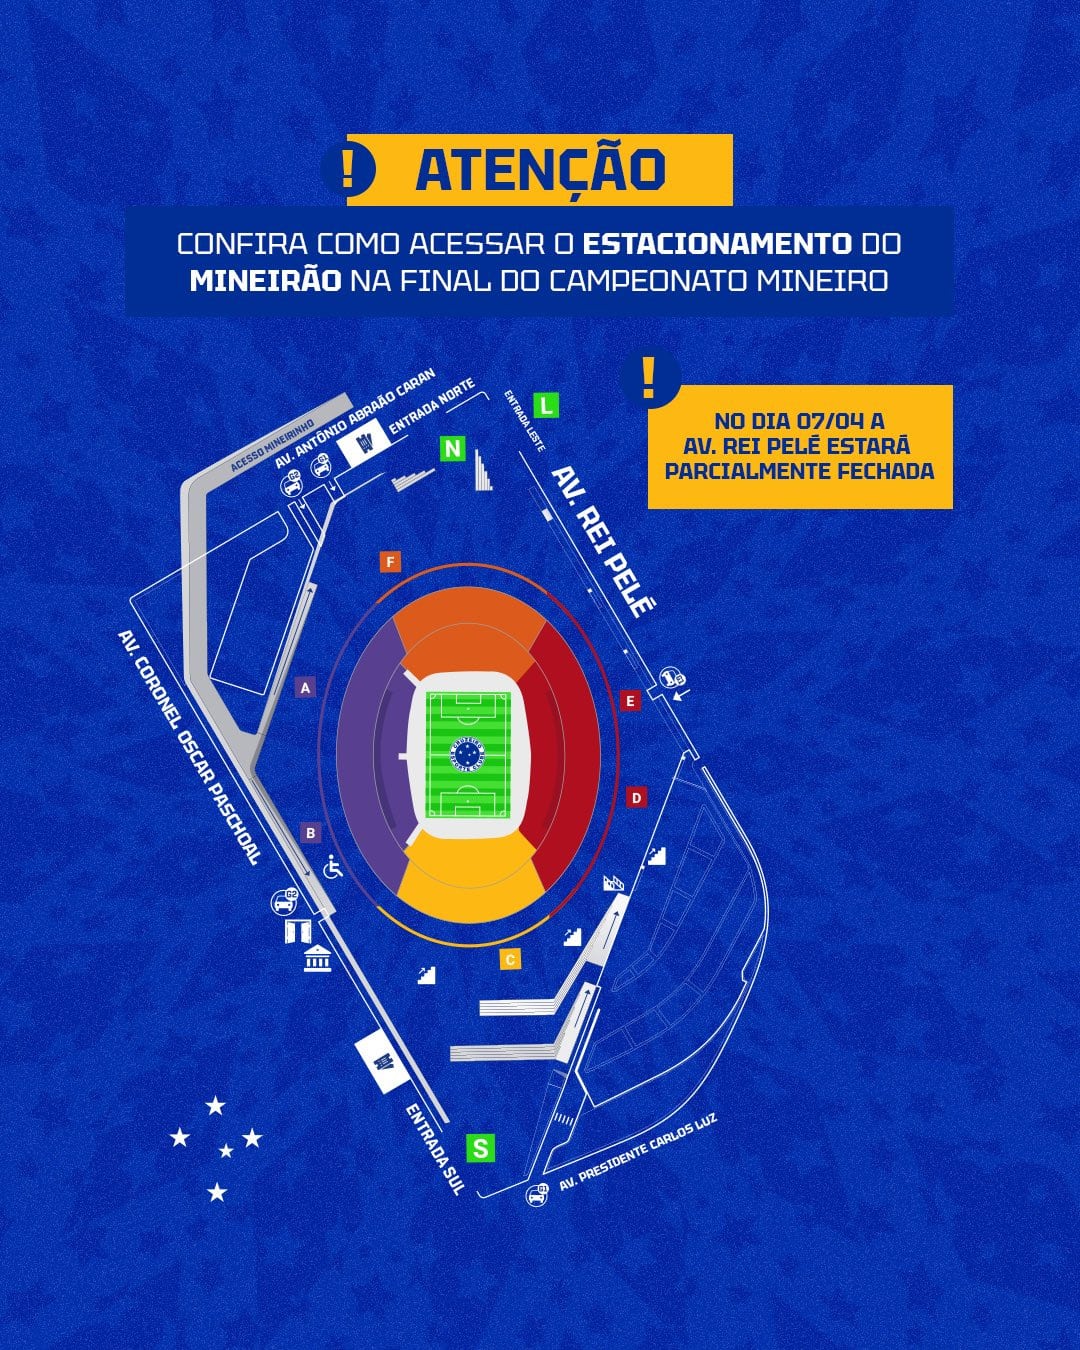 Cruzeiro alerta para mudança no trânsito para final contra o Atlético